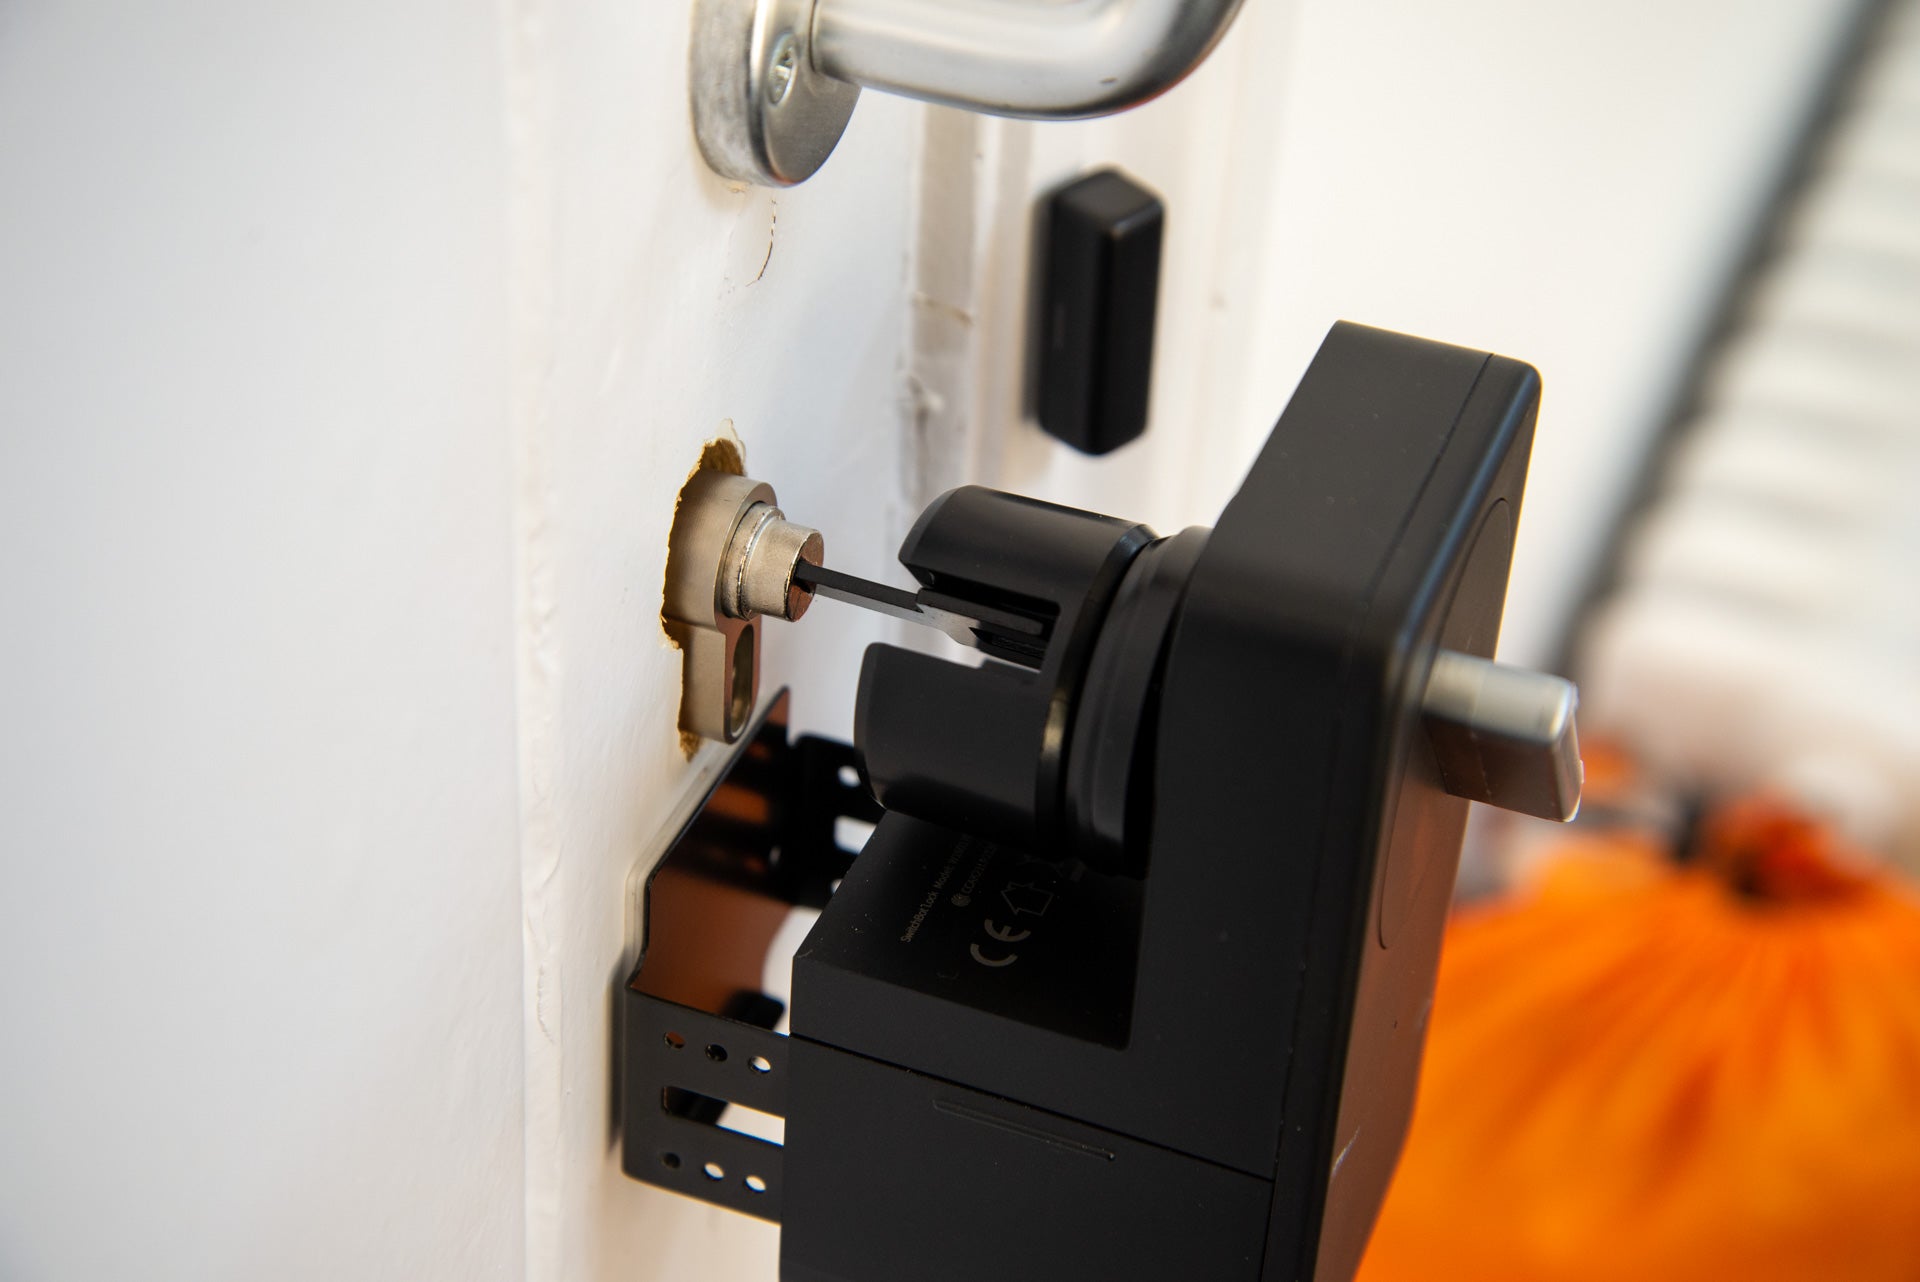 SwitchBot Lock turning key